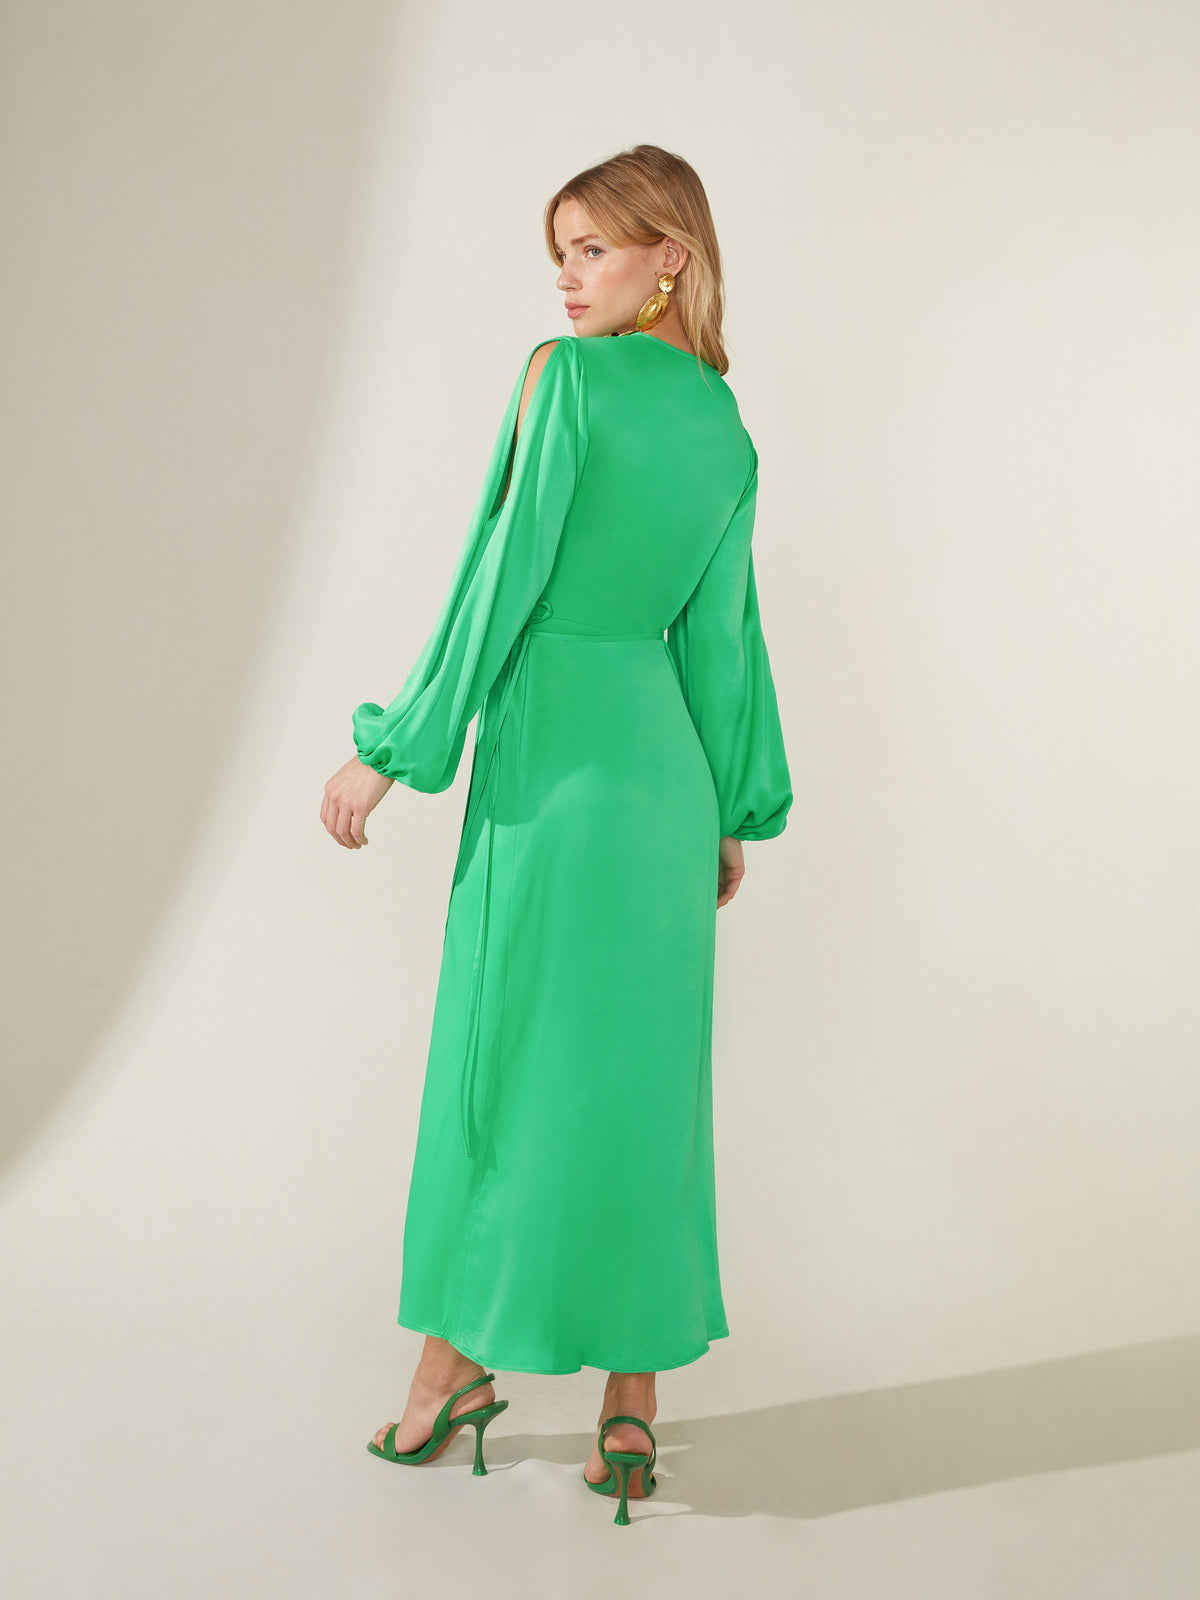 Green Satin Cold Shoulder Wrap Dress